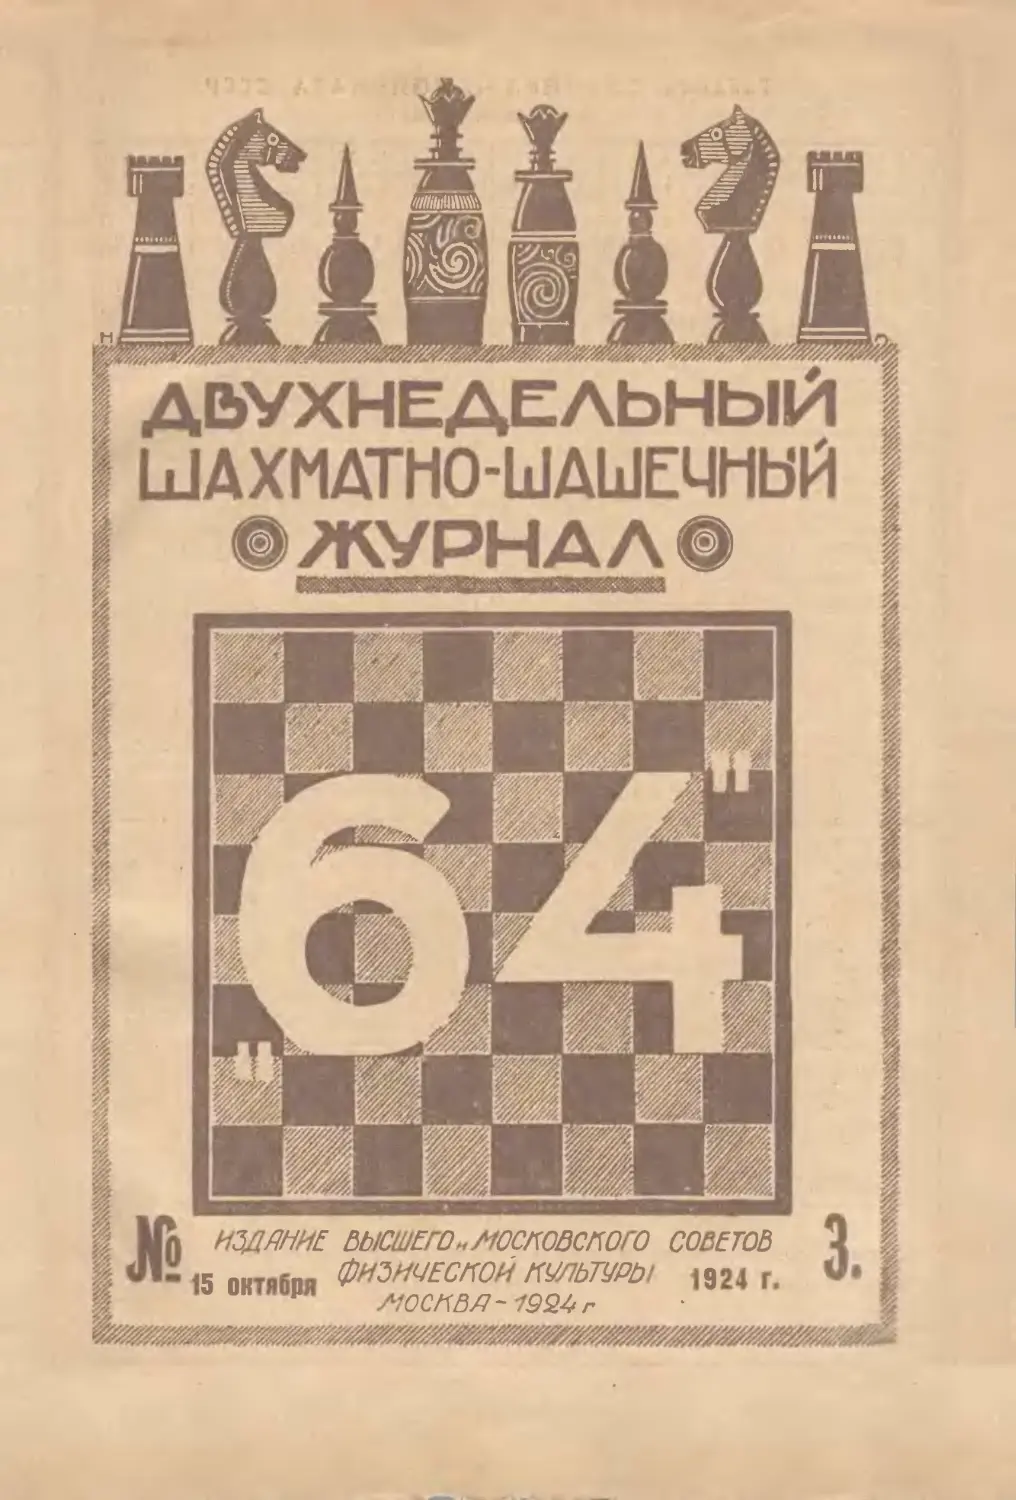 №3 - 15 октября 1924 г.